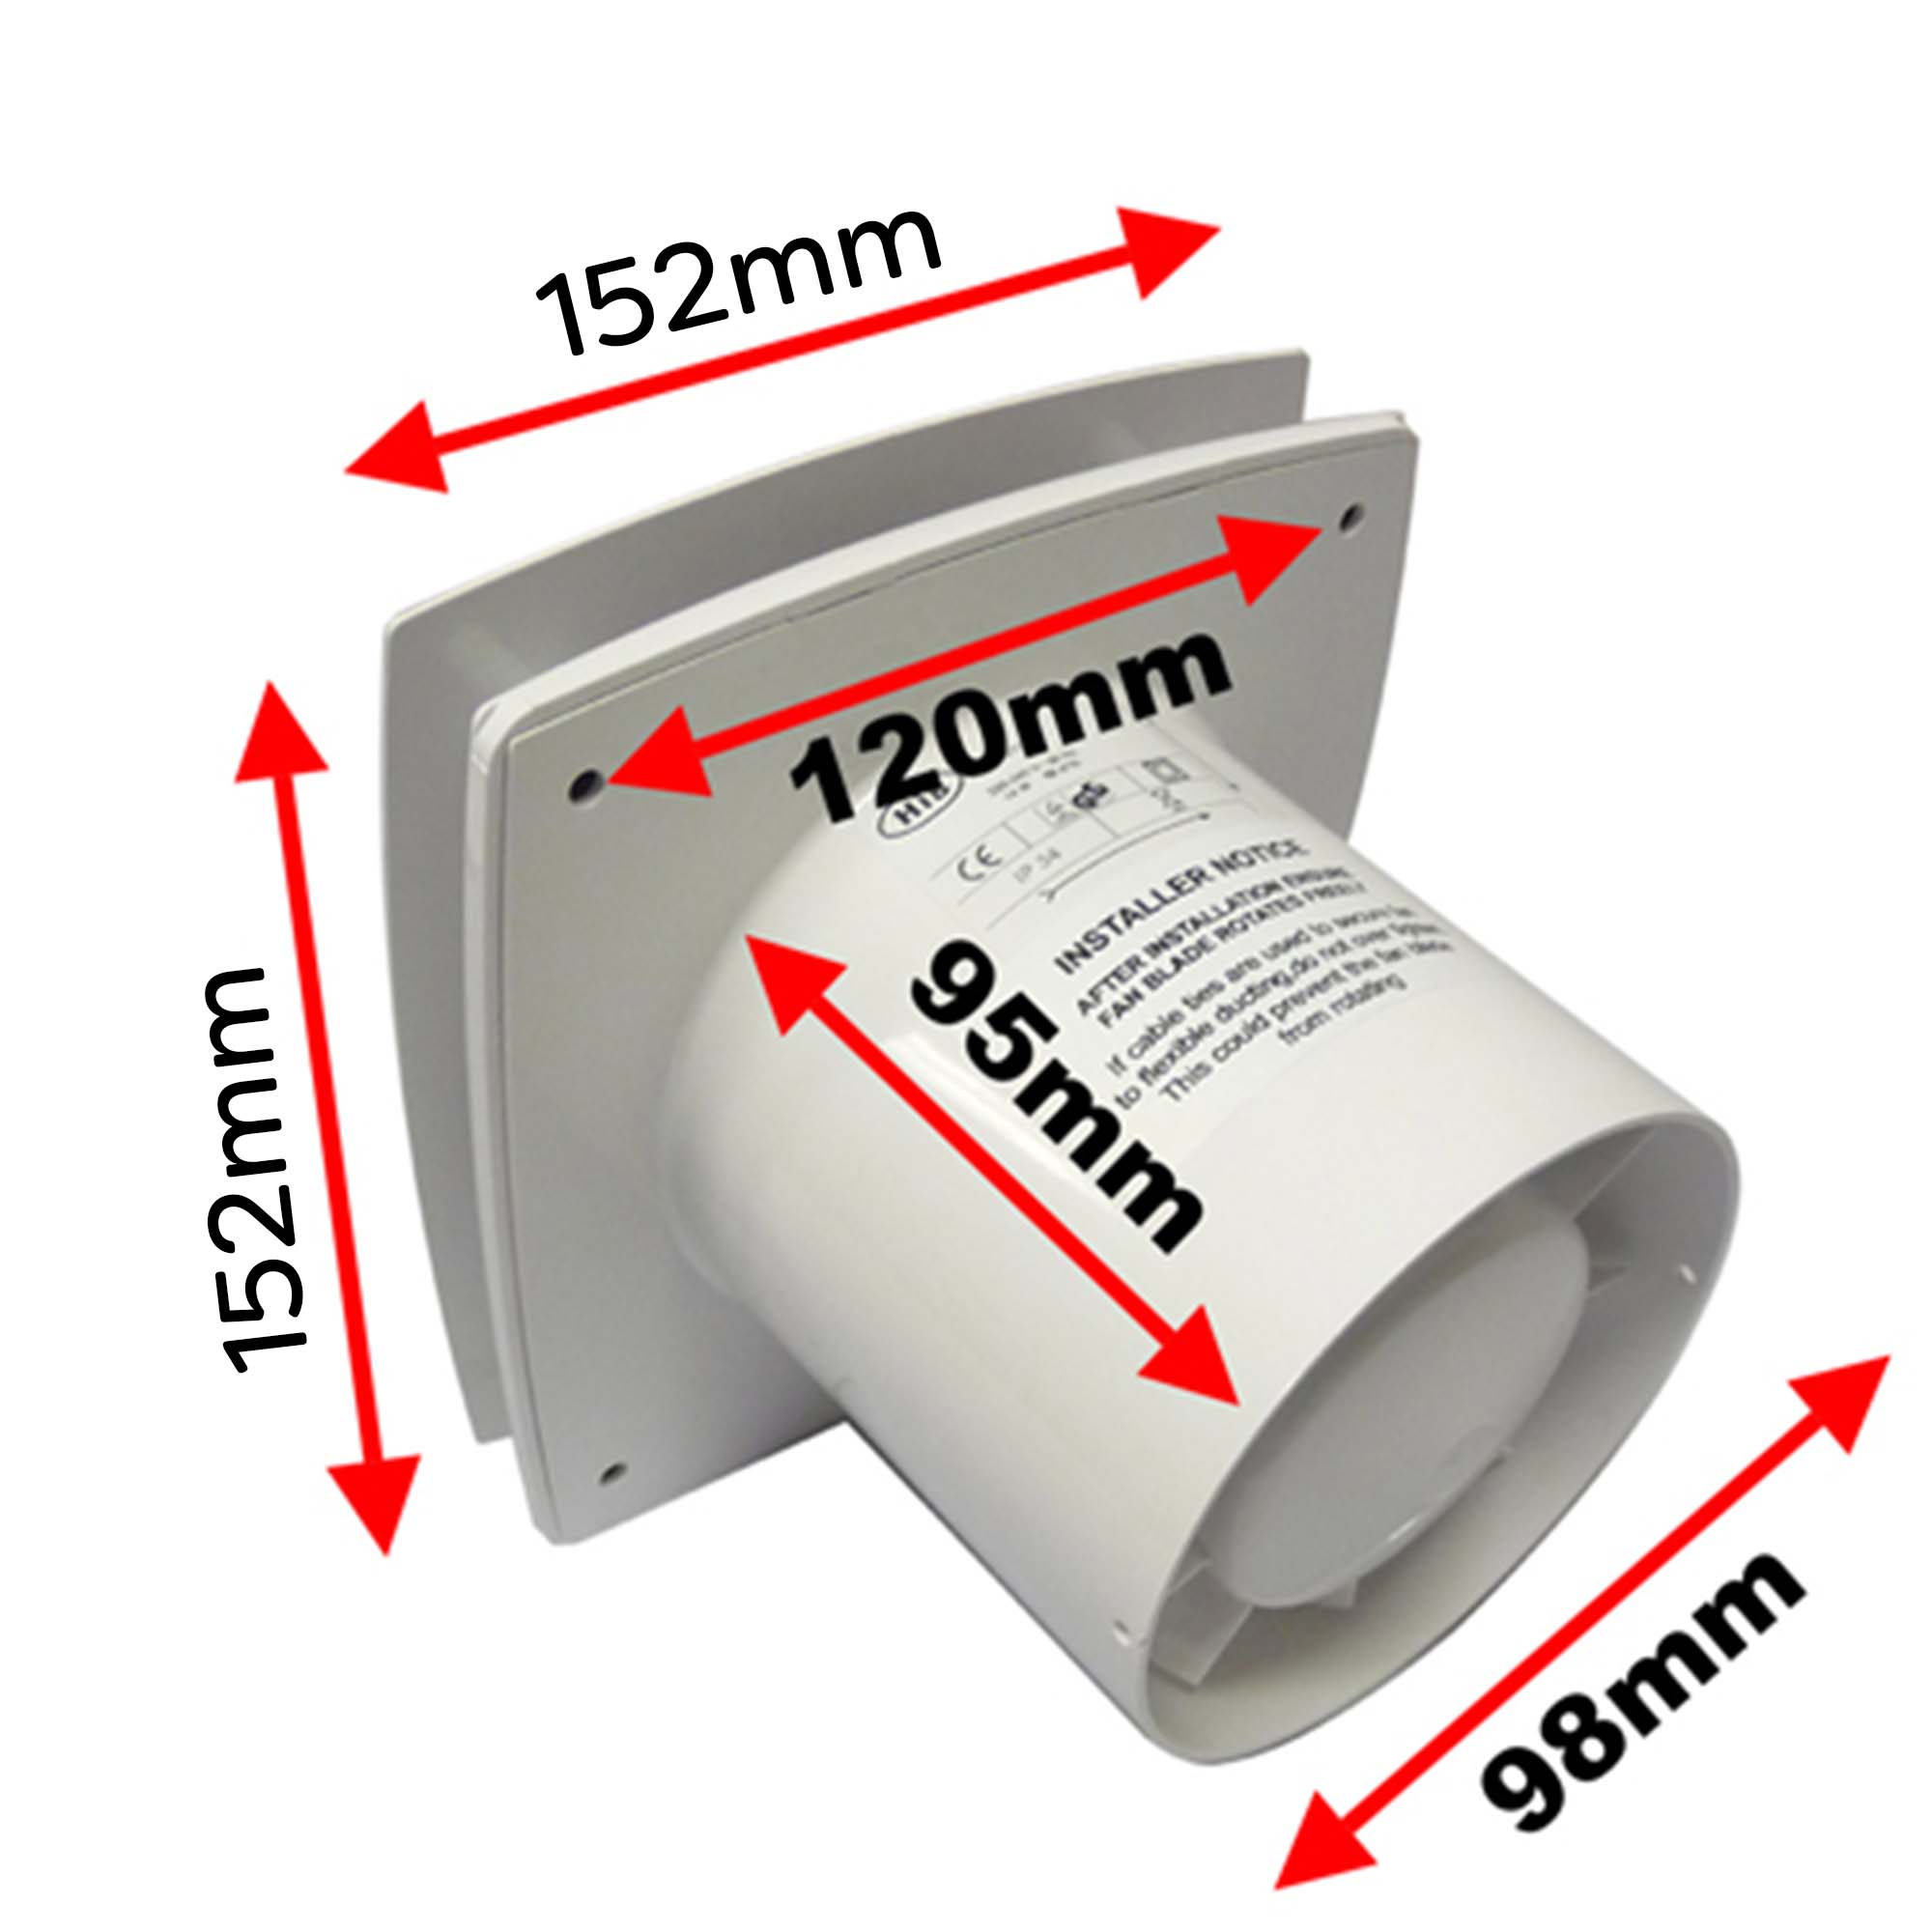 hib breeze extractor fan dimensions